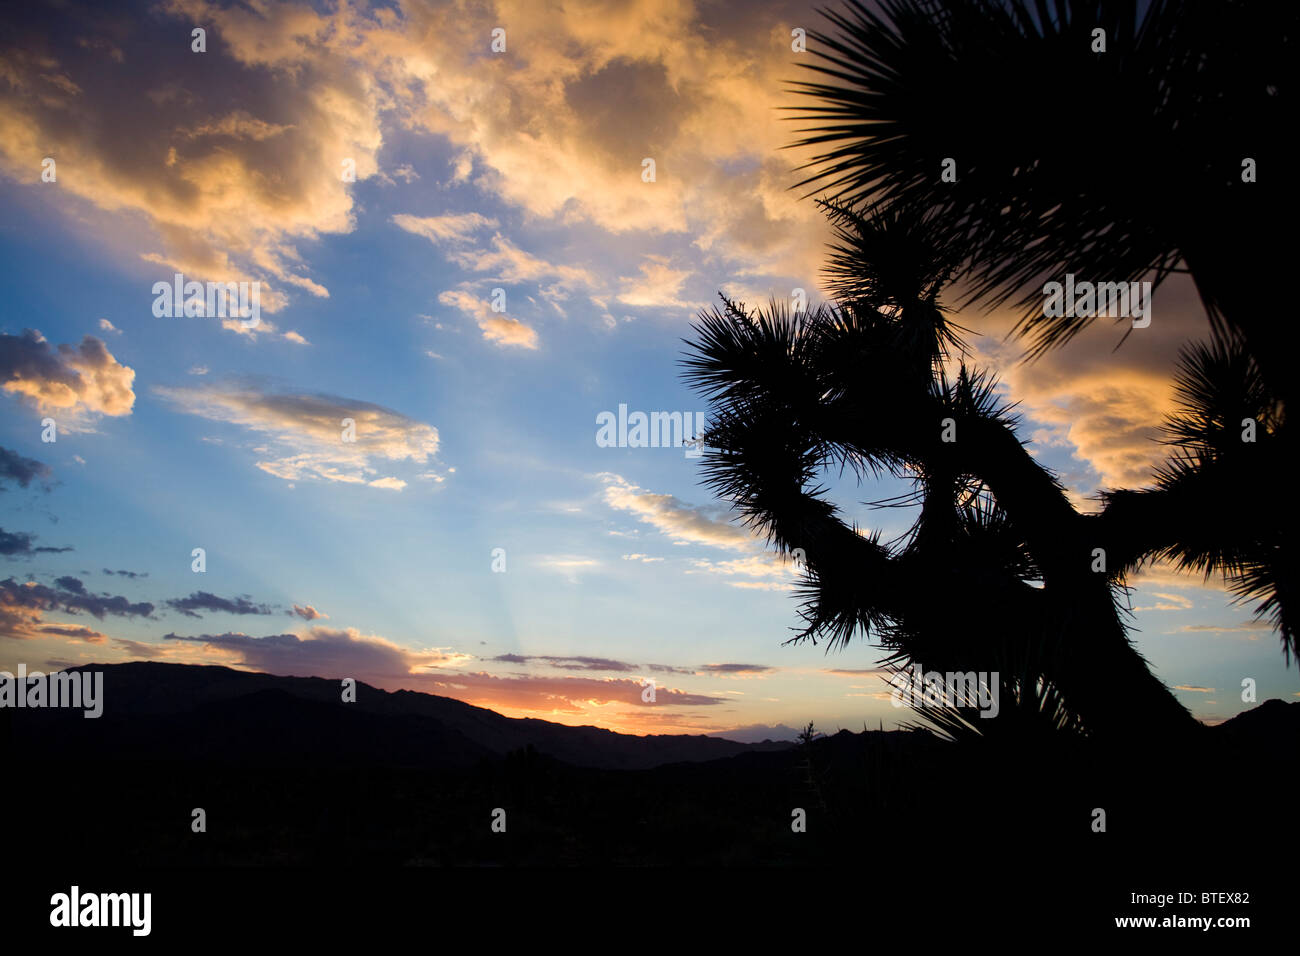 Joshua tree vignette against desert sunset sky Stock Photo